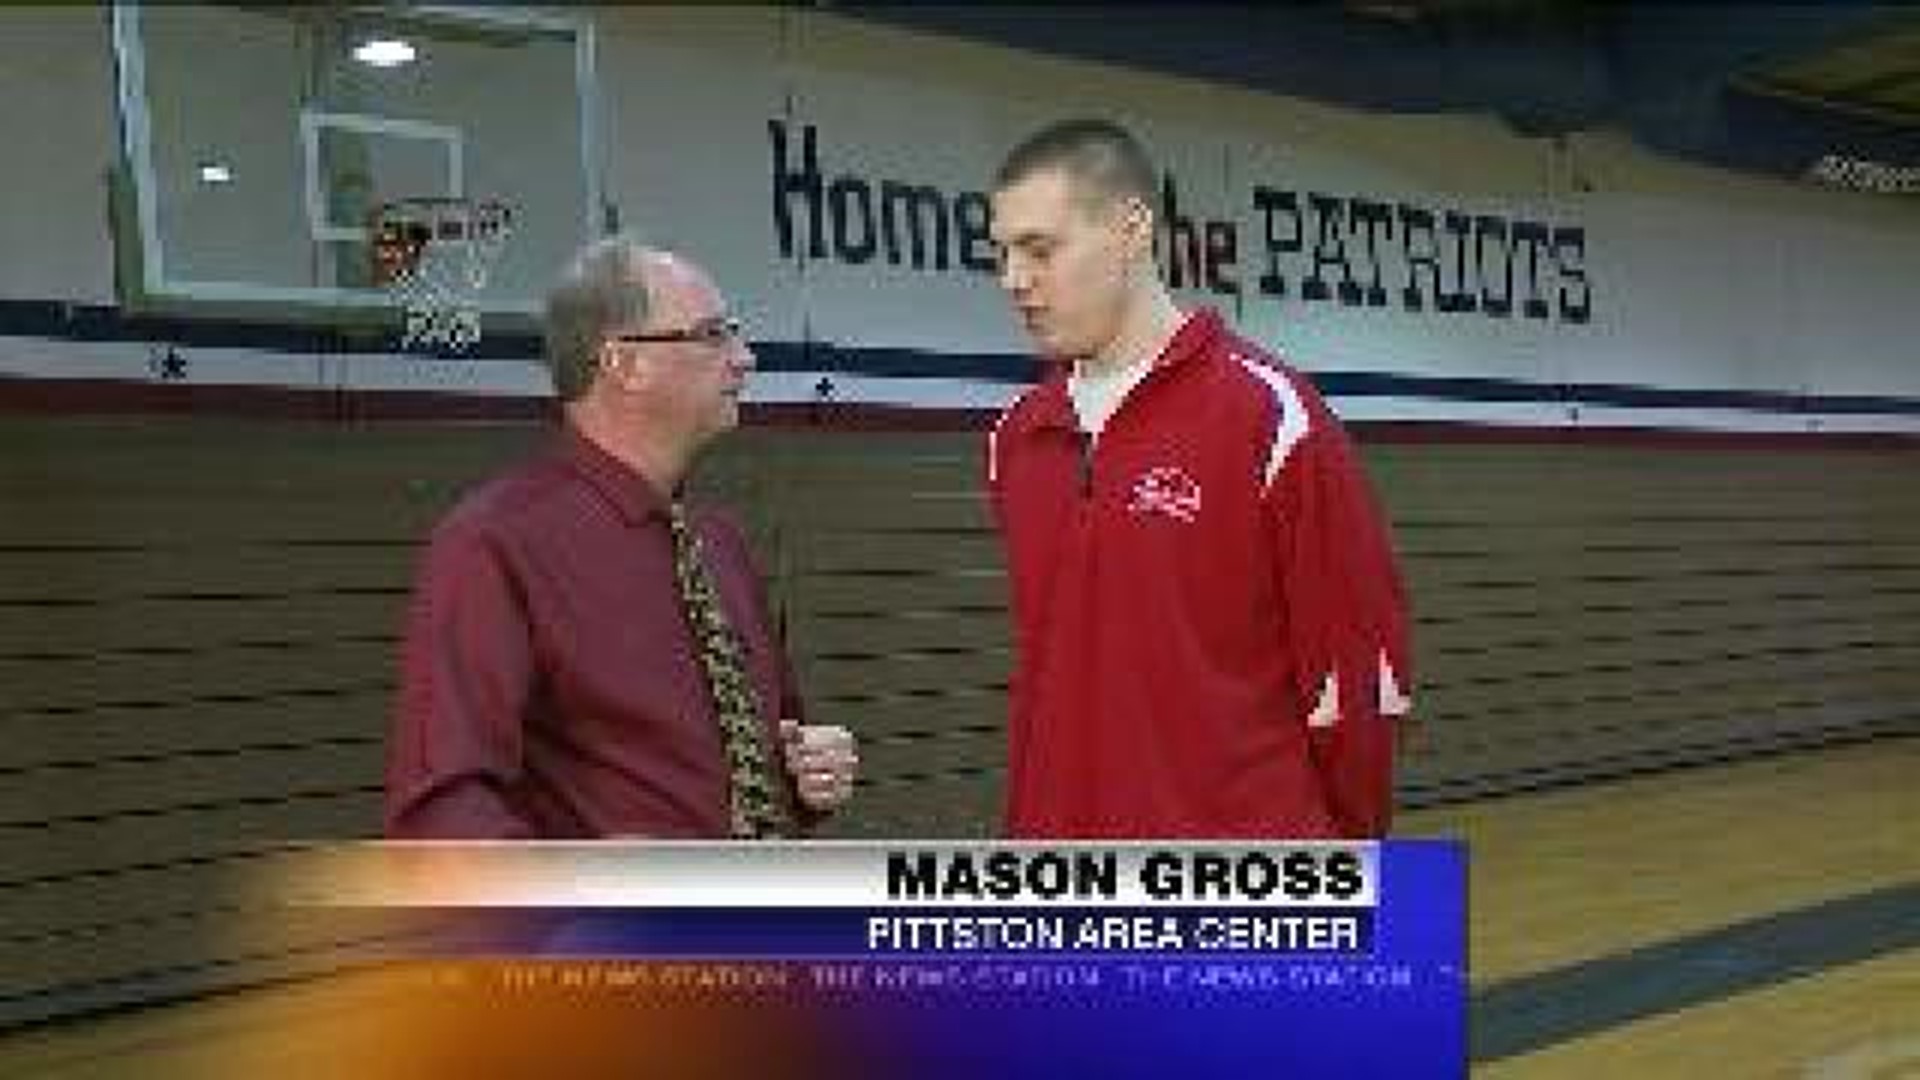 Pittston Area Center-Mason Gross